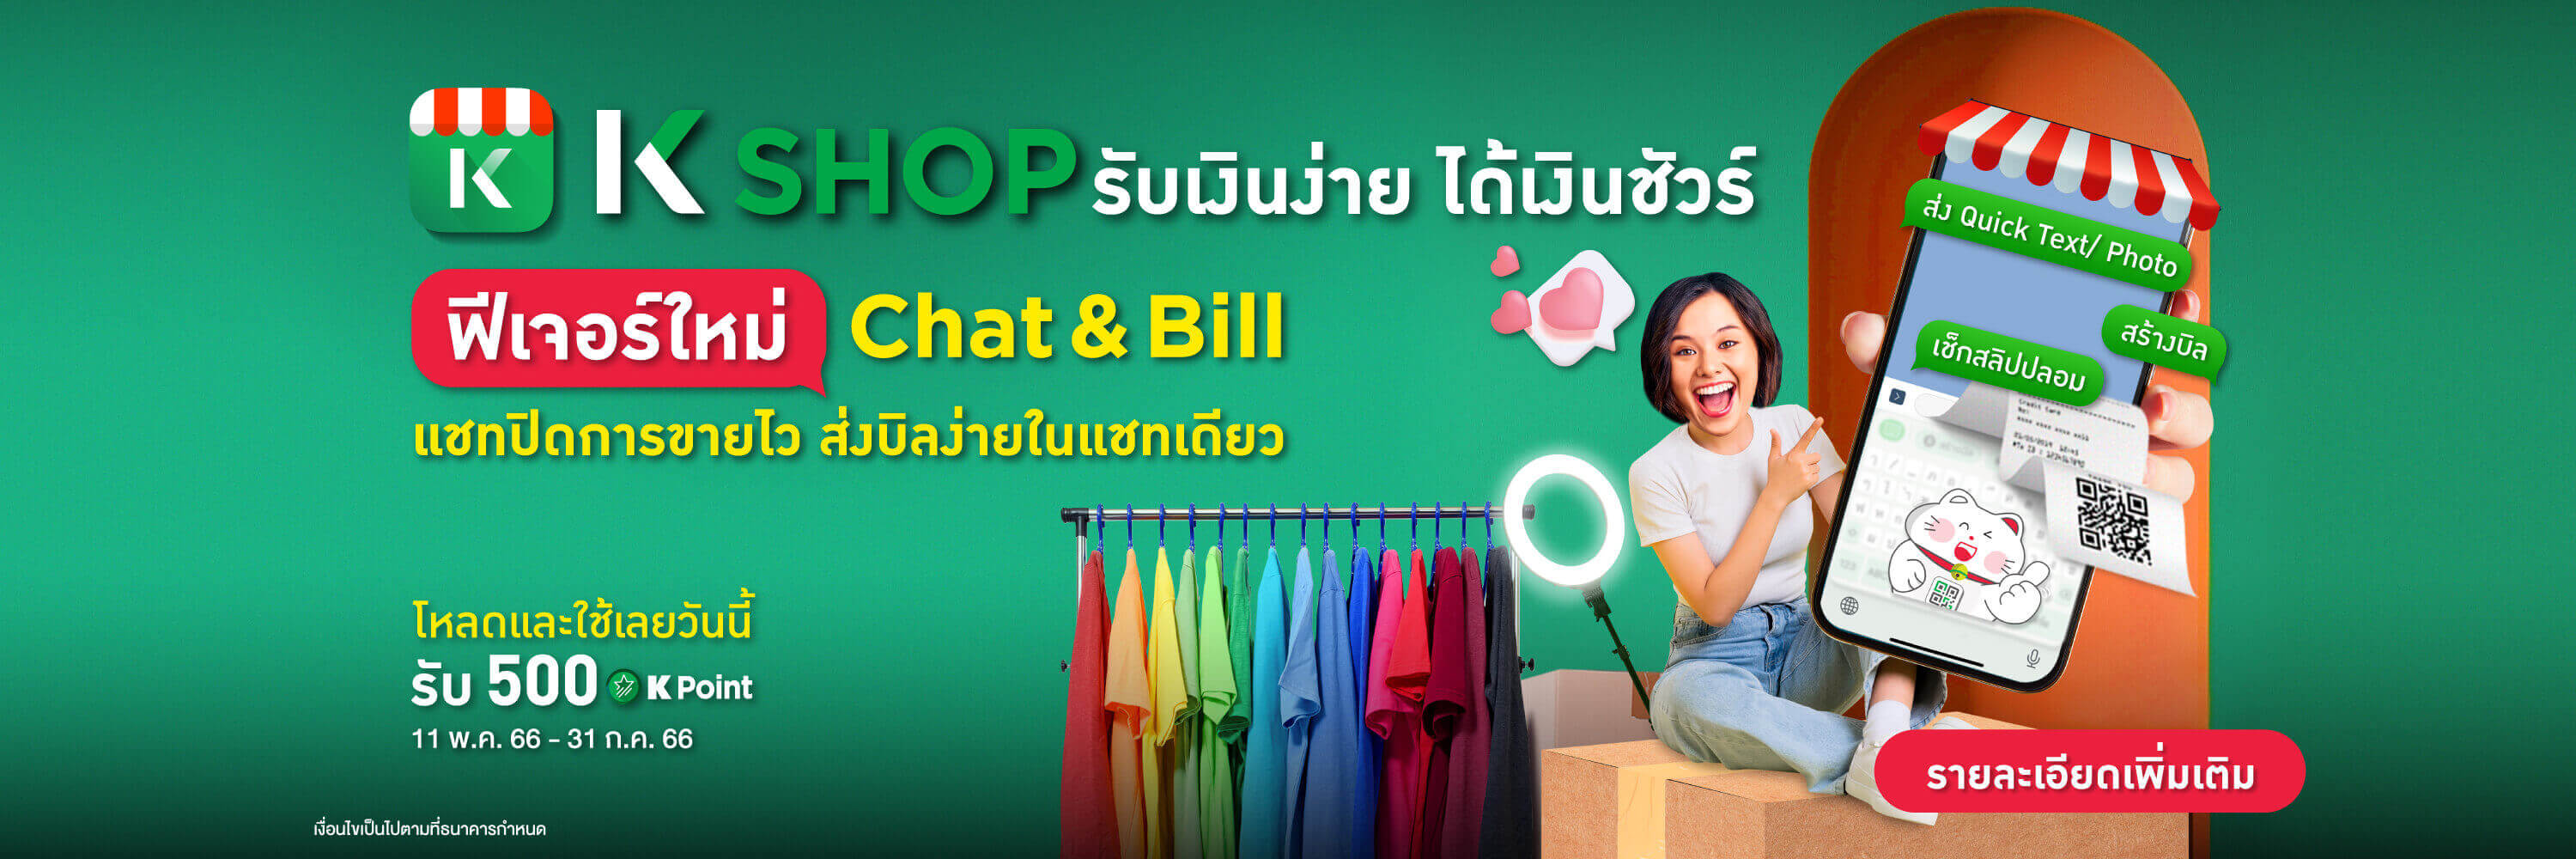 แอปจัดการร้านค้า QR รับเงิน สร้าง payment link mPOS บัตรเครดิต Chat & Bill เรียกเก็บเงินในแชท รับเงิน Alipay WeChat Pay แจ้งเตือนเงินเข้า